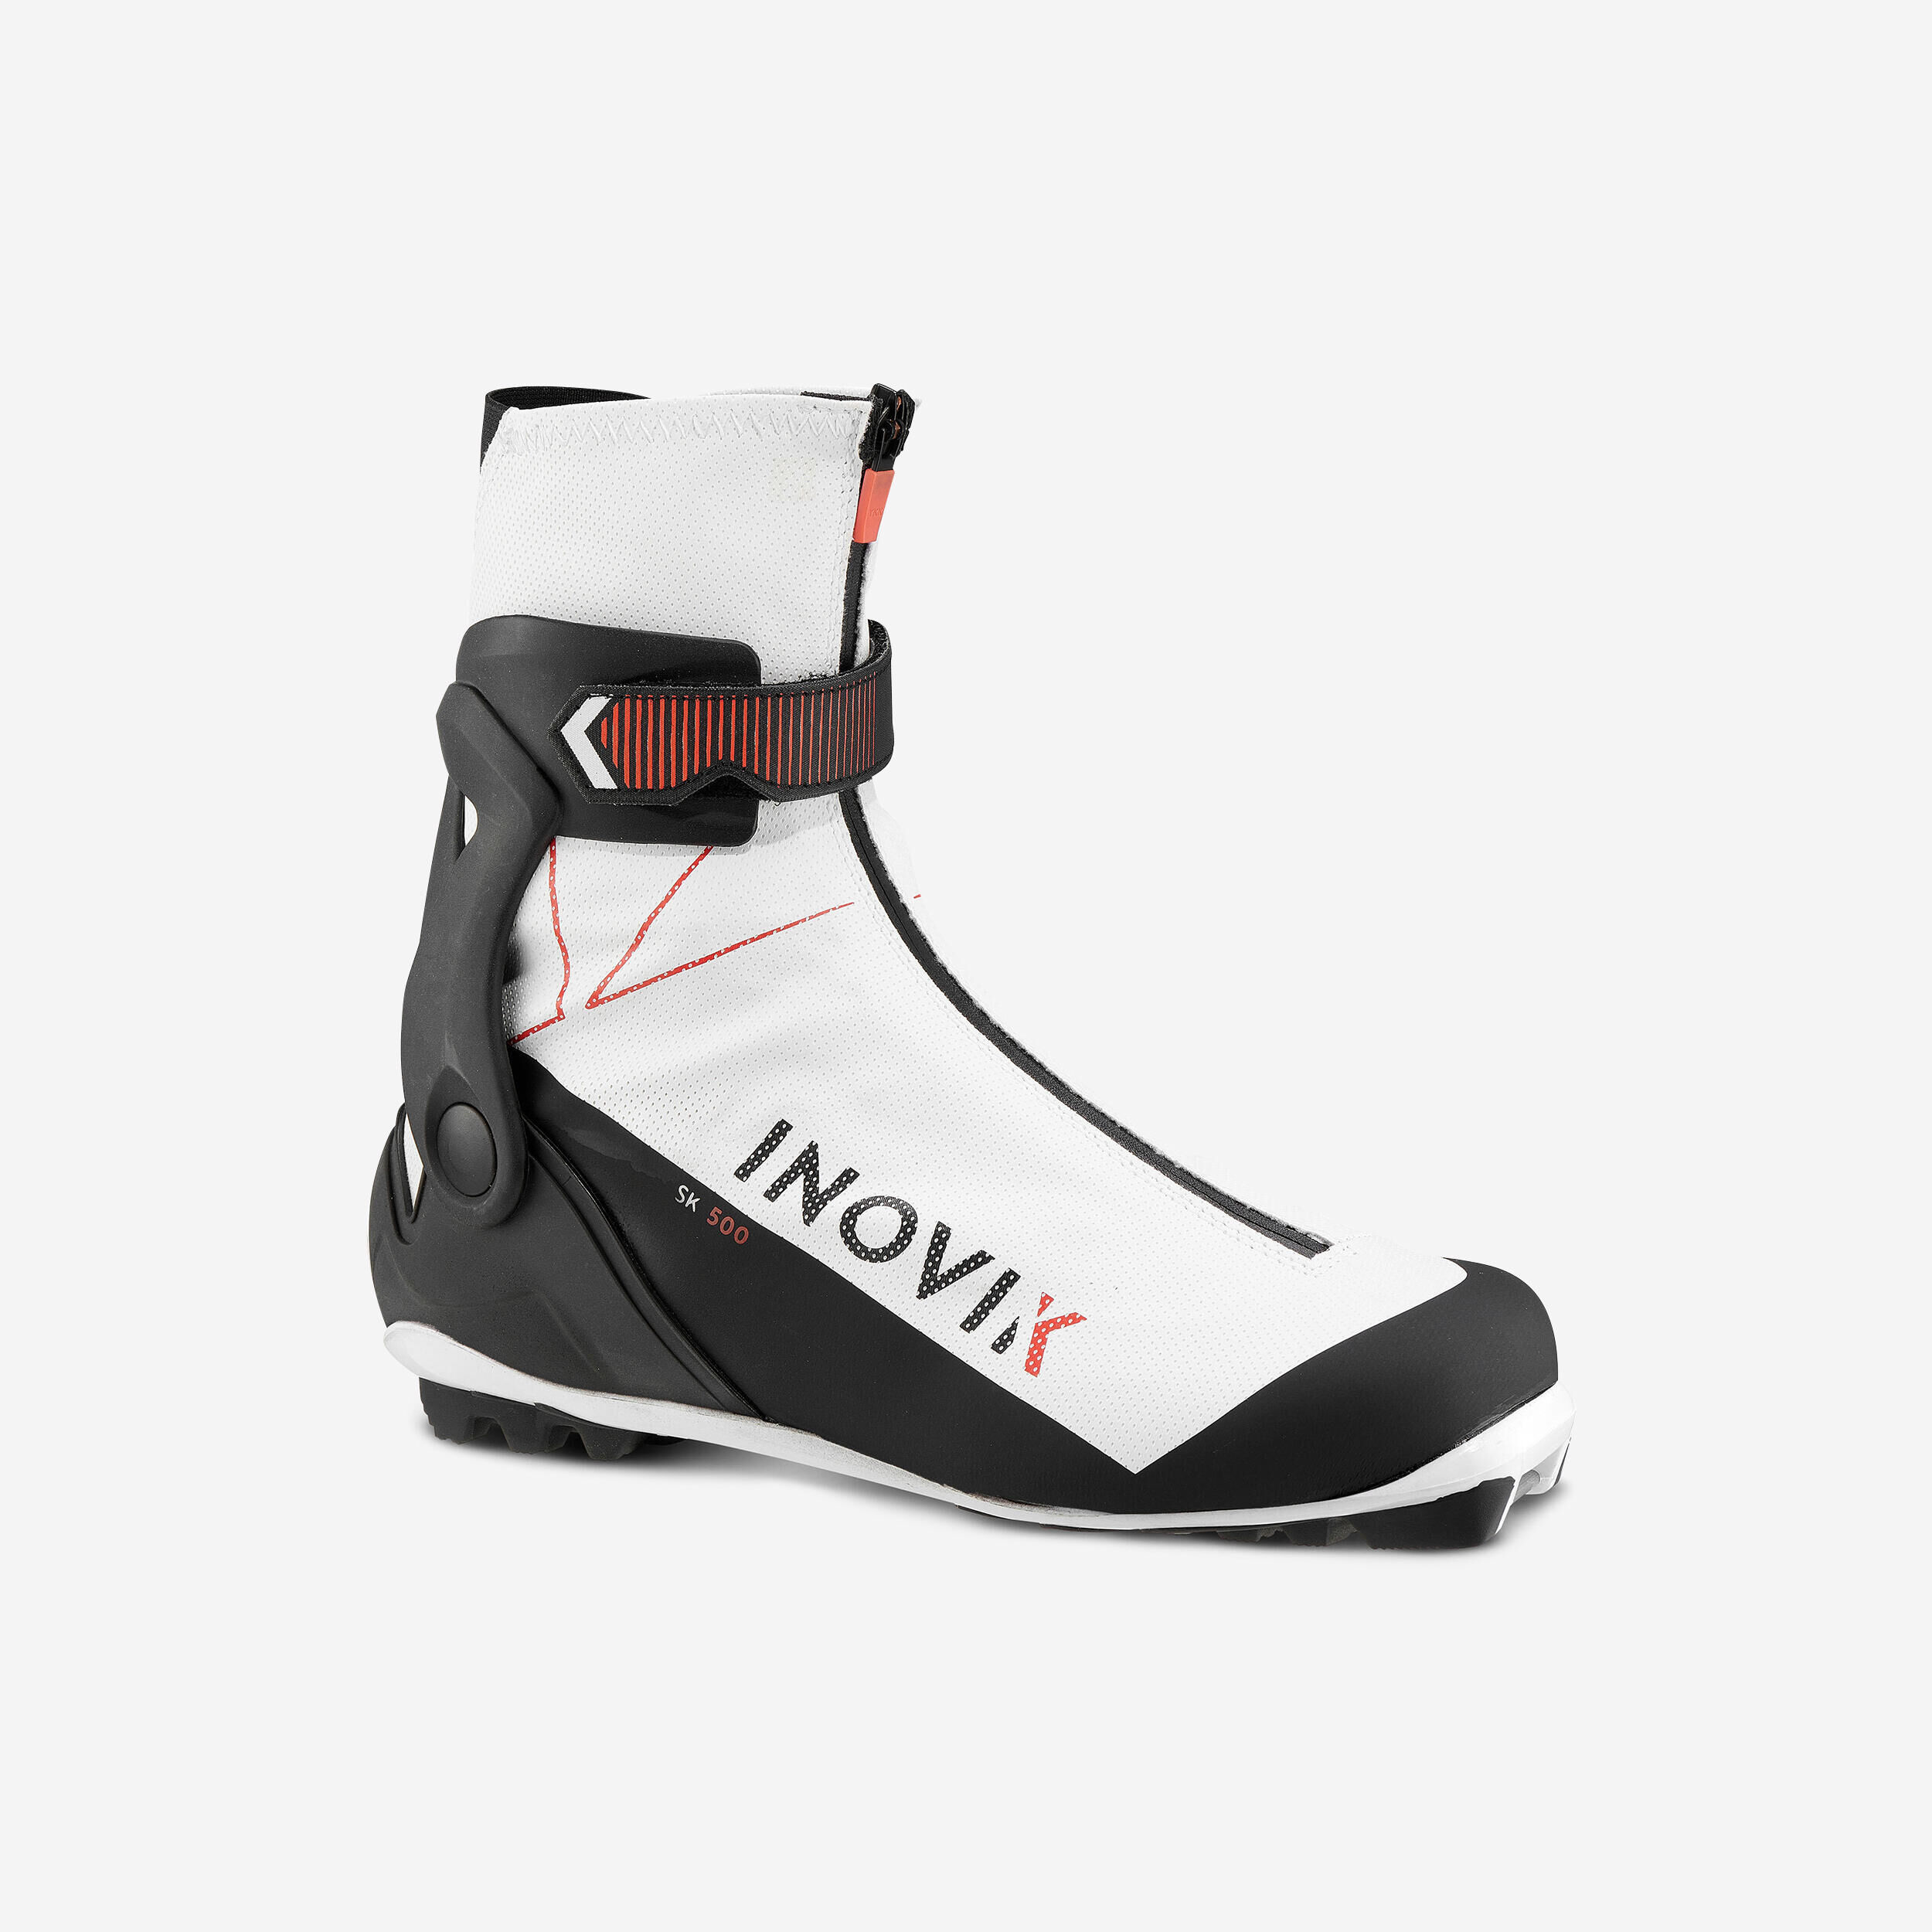 INOVIK Women’s Cross-Country Skate Ski Boots  - XCS Skate Ski Boots 500